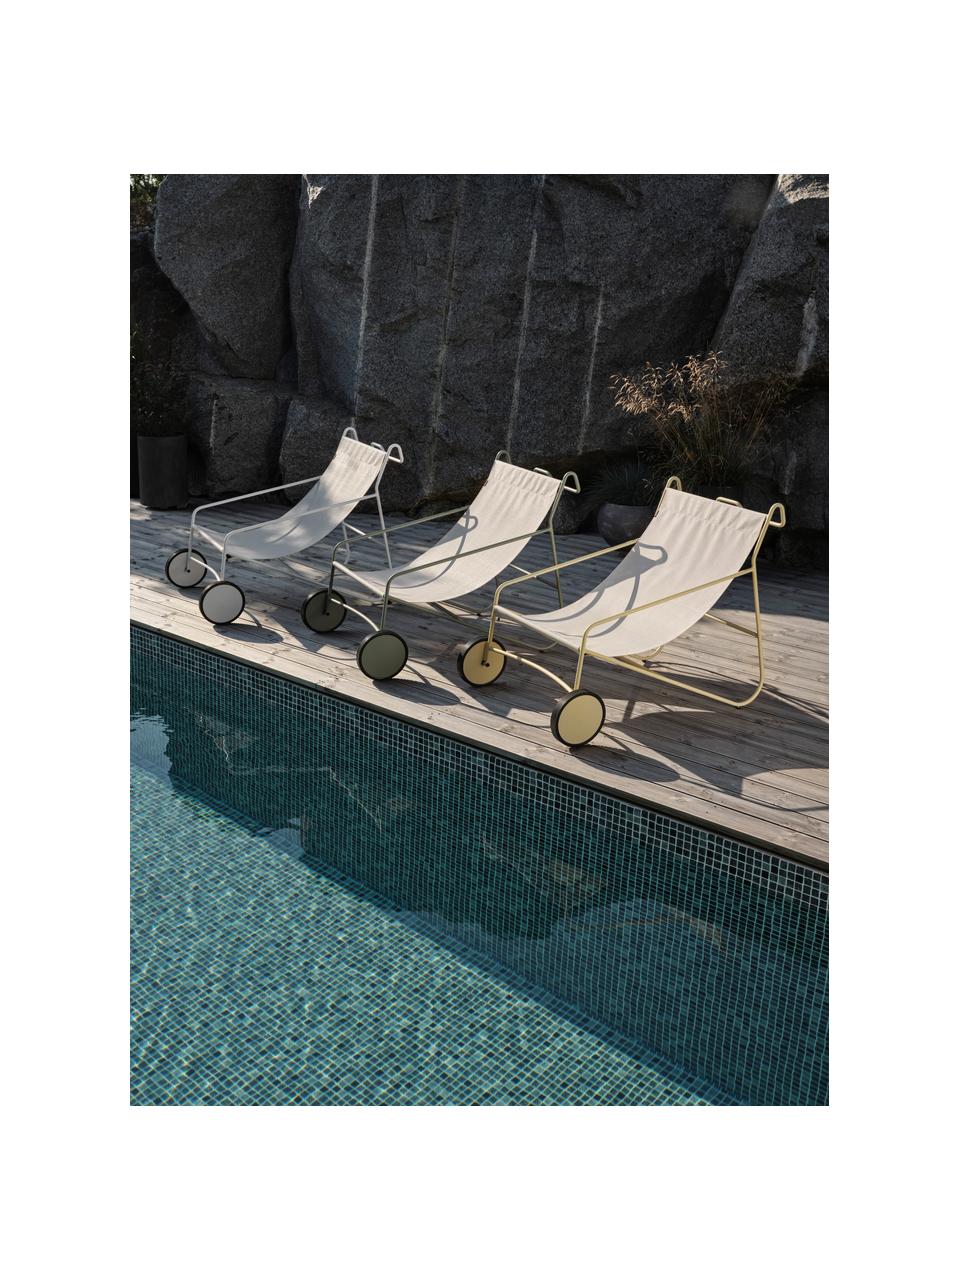 Garten-Loungesessel Poul mit Rollen, 2 Stück, Bezug: Textil, Gestell: Aluminium, beschichtet, Off White, Salbeigrün, B 74 x T 106 cm